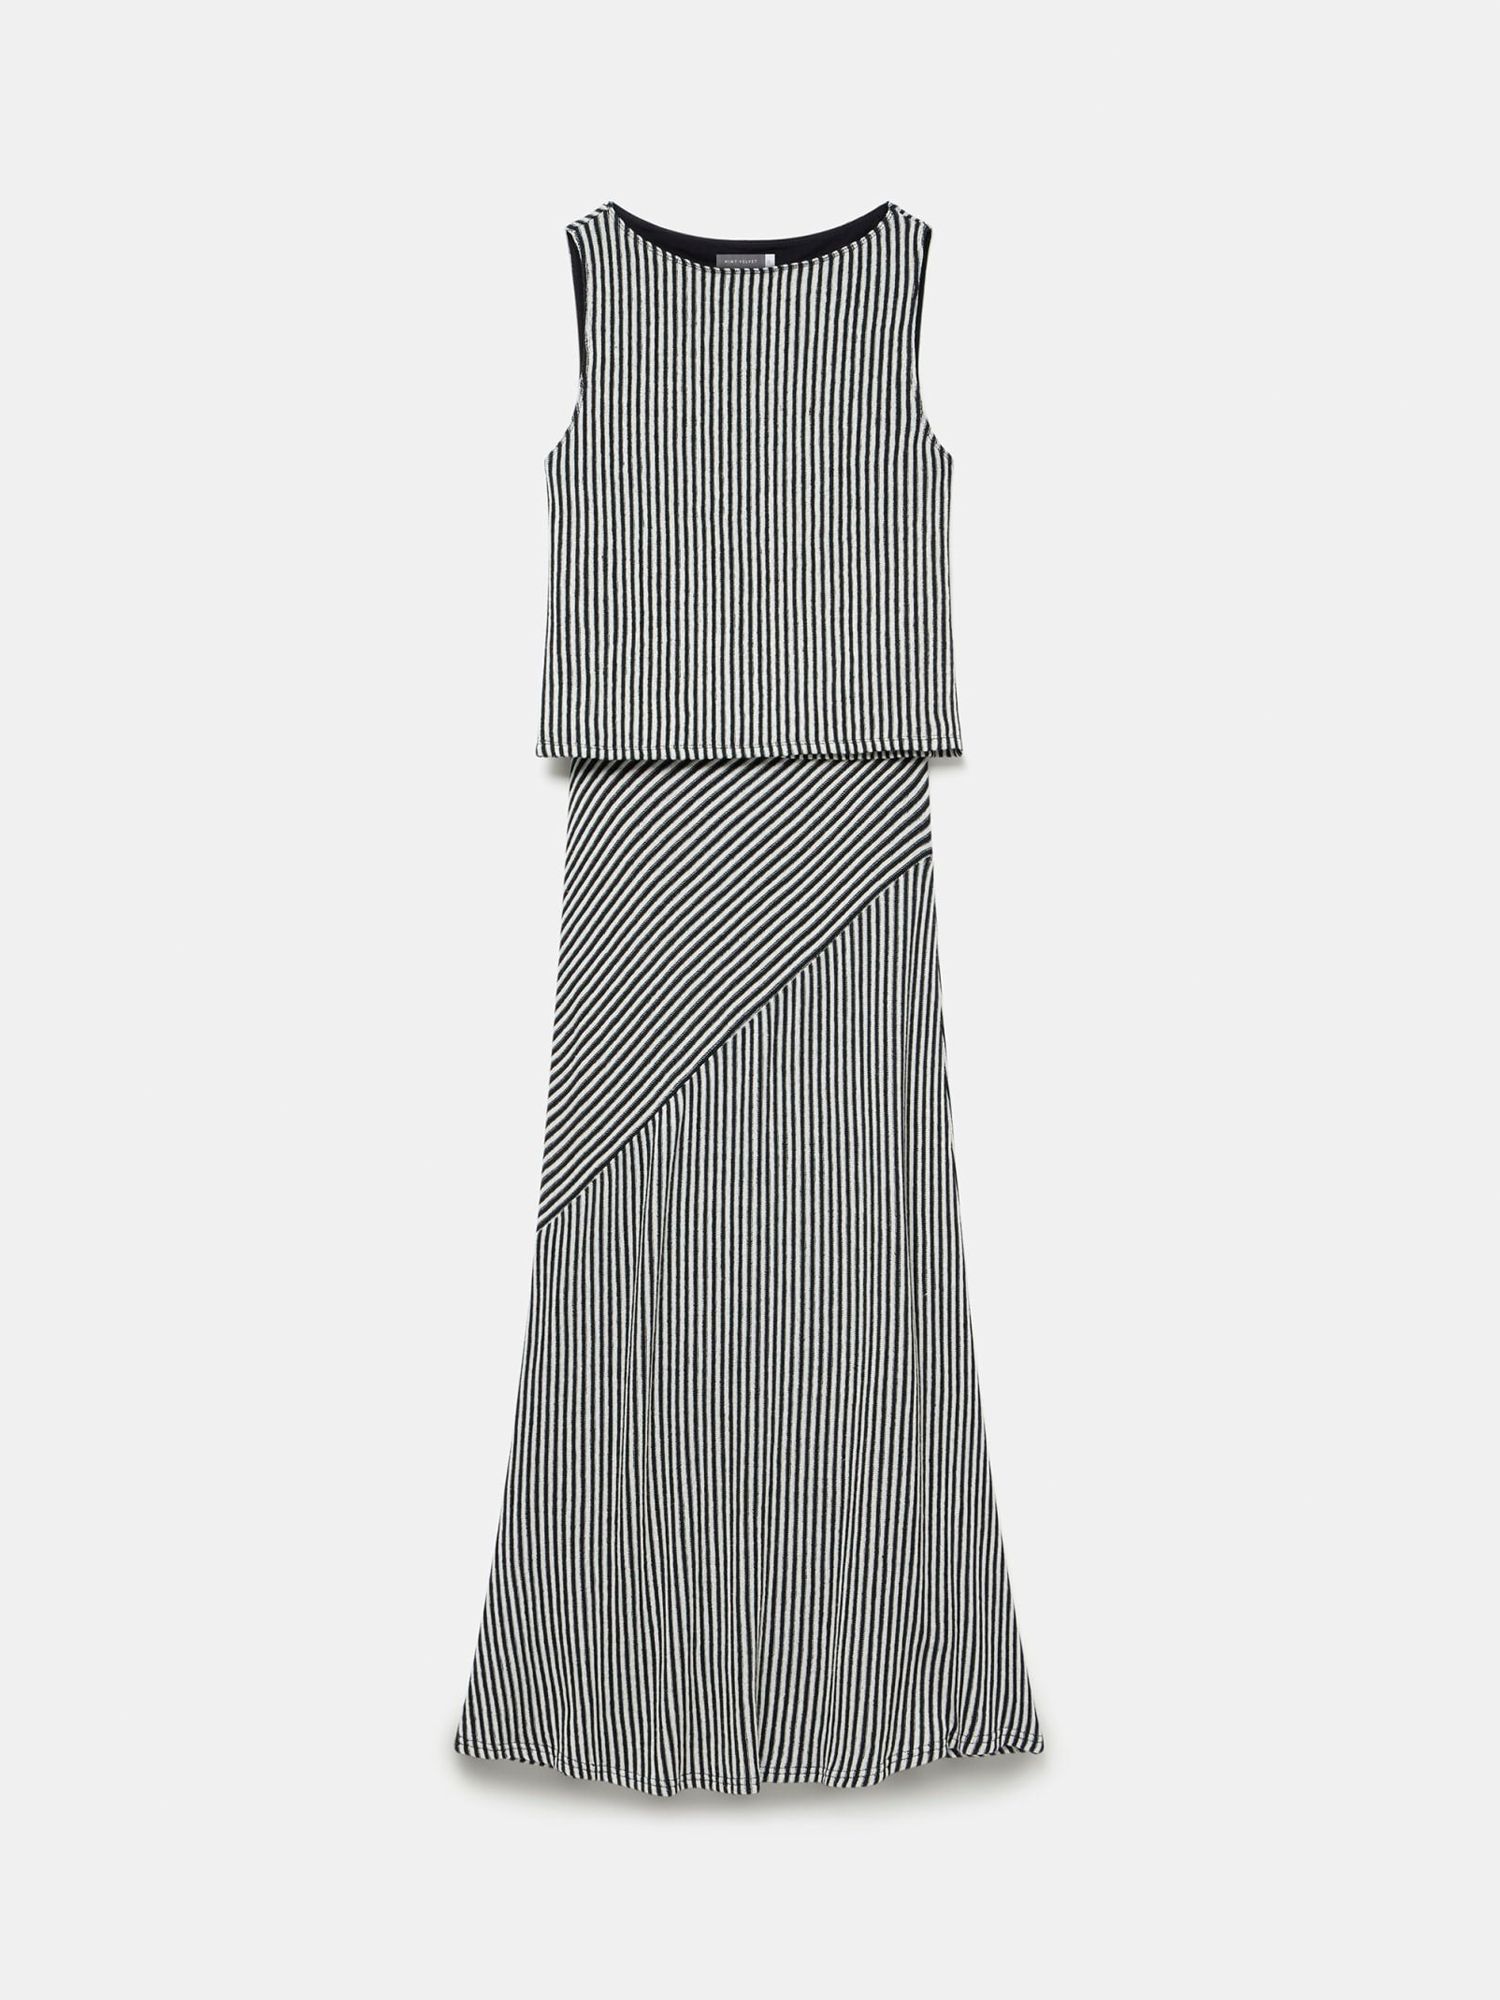 Mint Velvet Striped Two Part Sleeveless Top & Maxi Skirt Set, Black/White, XS